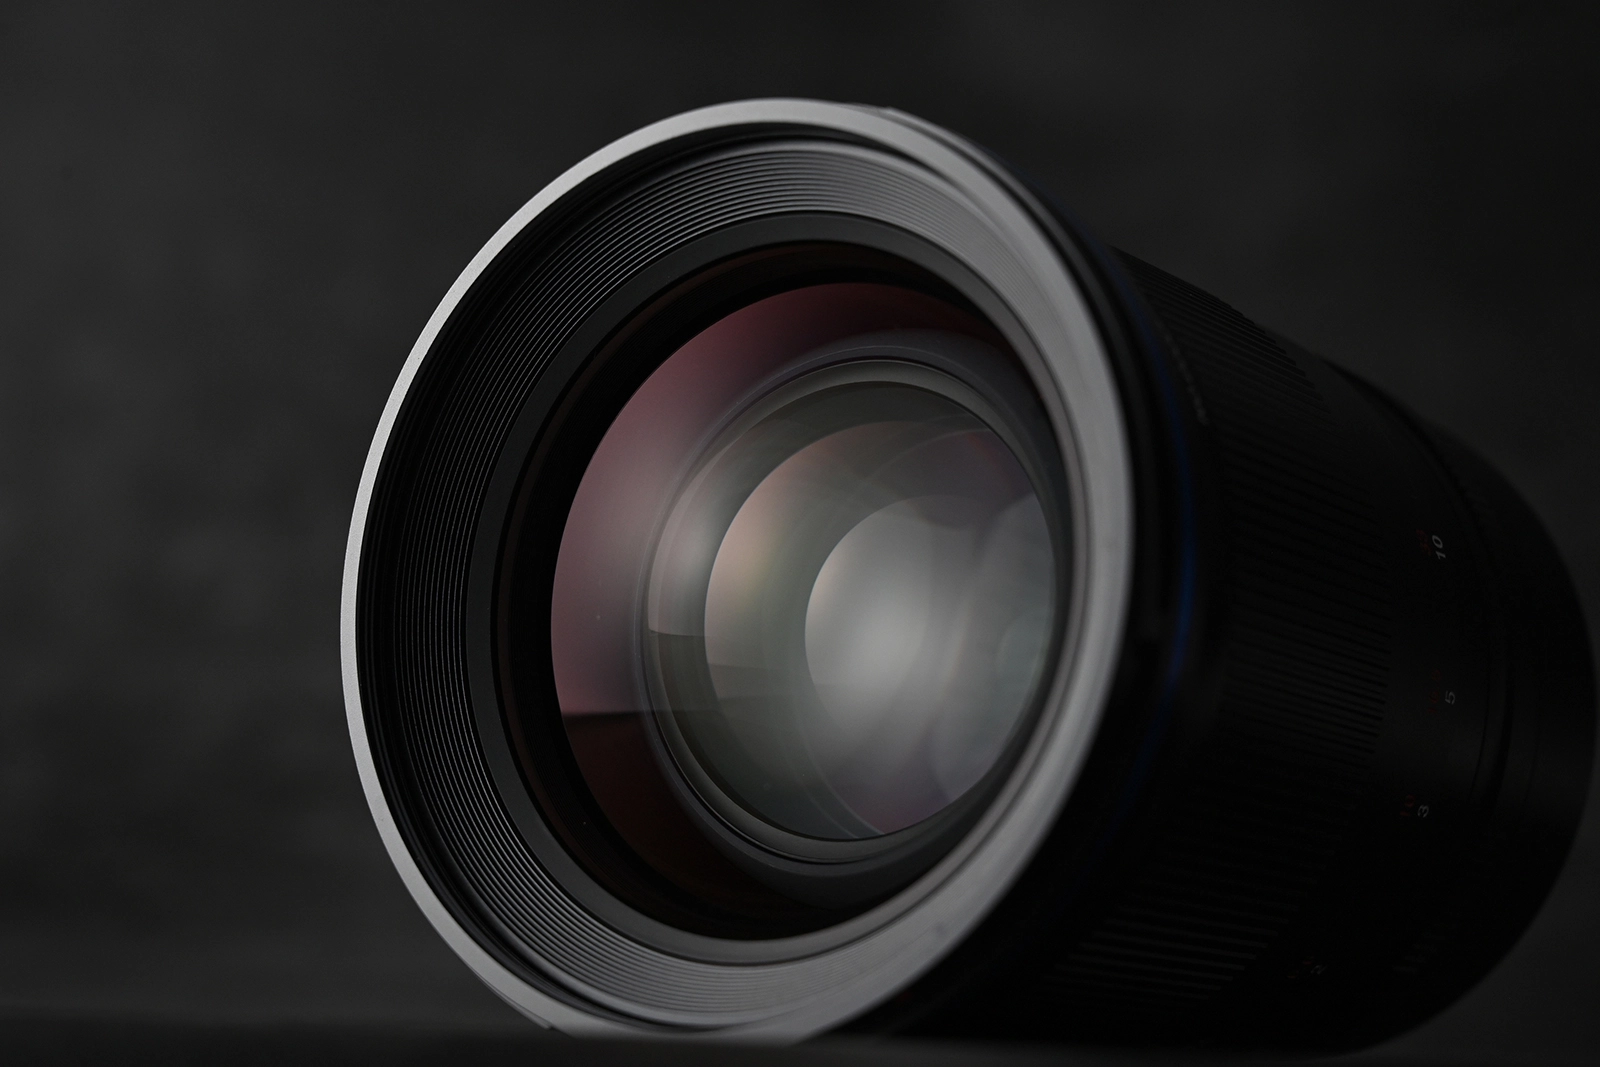 Laowa Argus 35mm F0.95 ra mắt, ống kính khẩu độ mở rộng nhất dành cho full frame